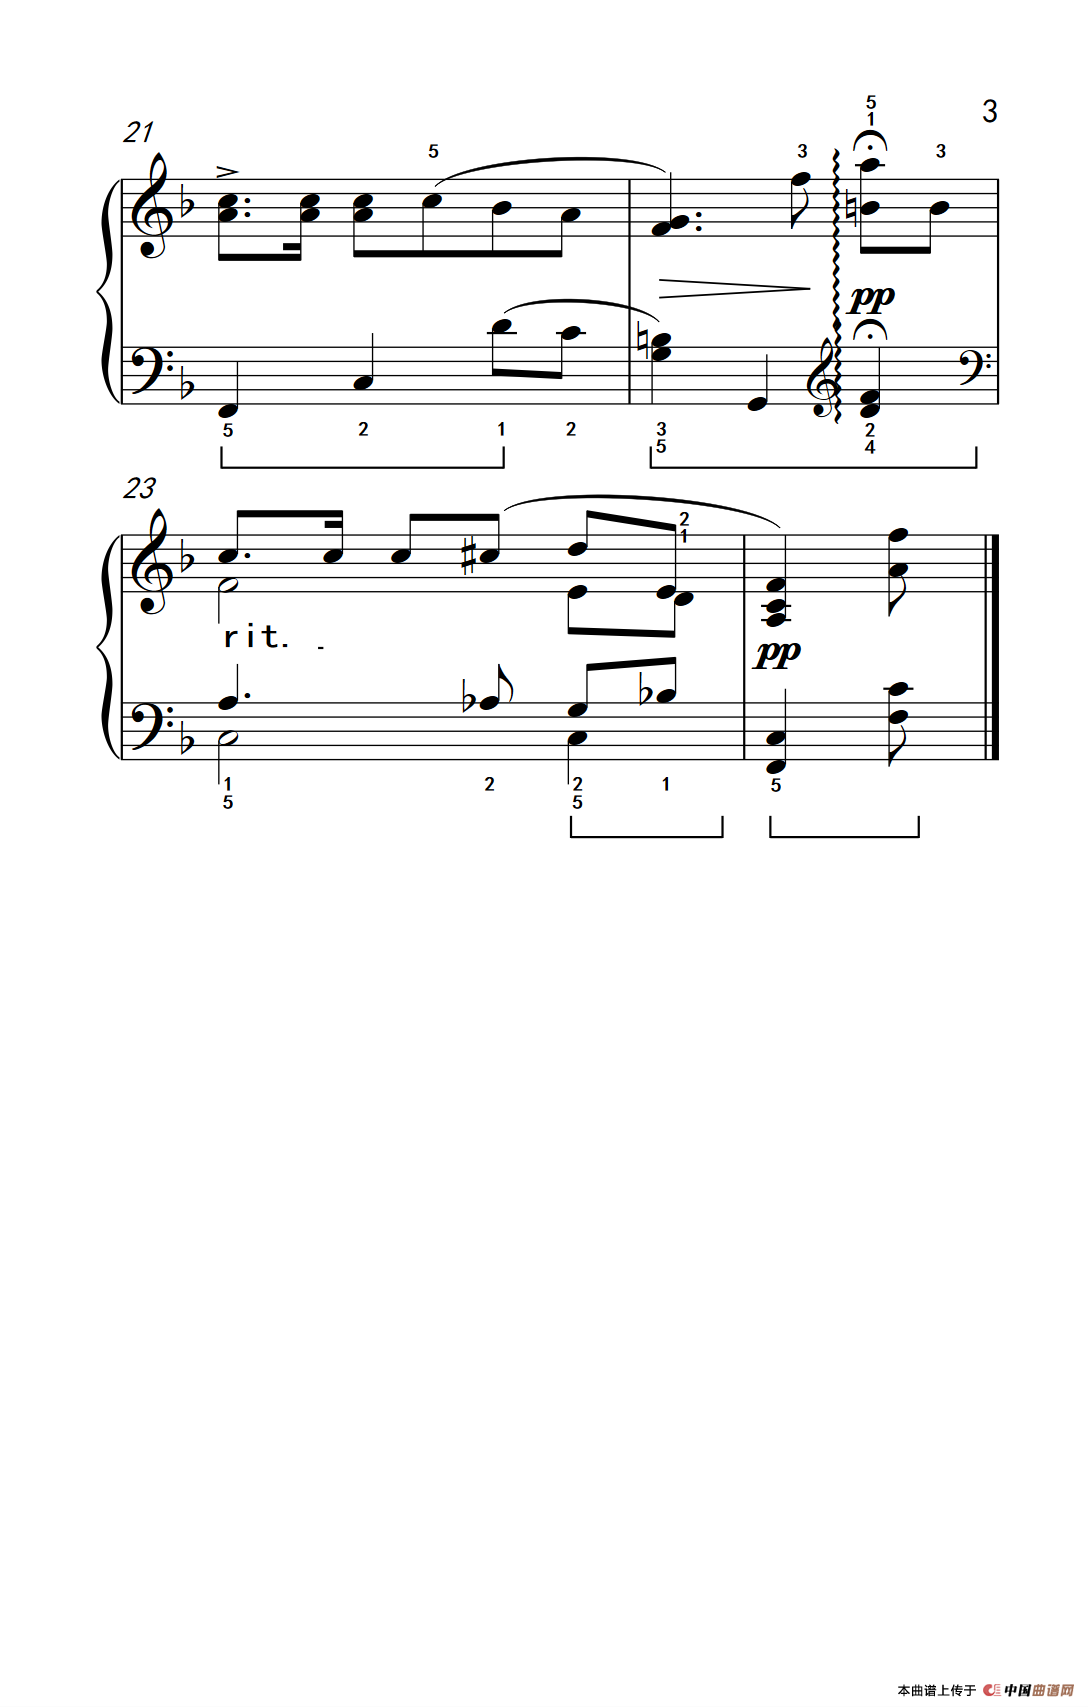 《维也纳的旋律》钢琴曲谱图分享